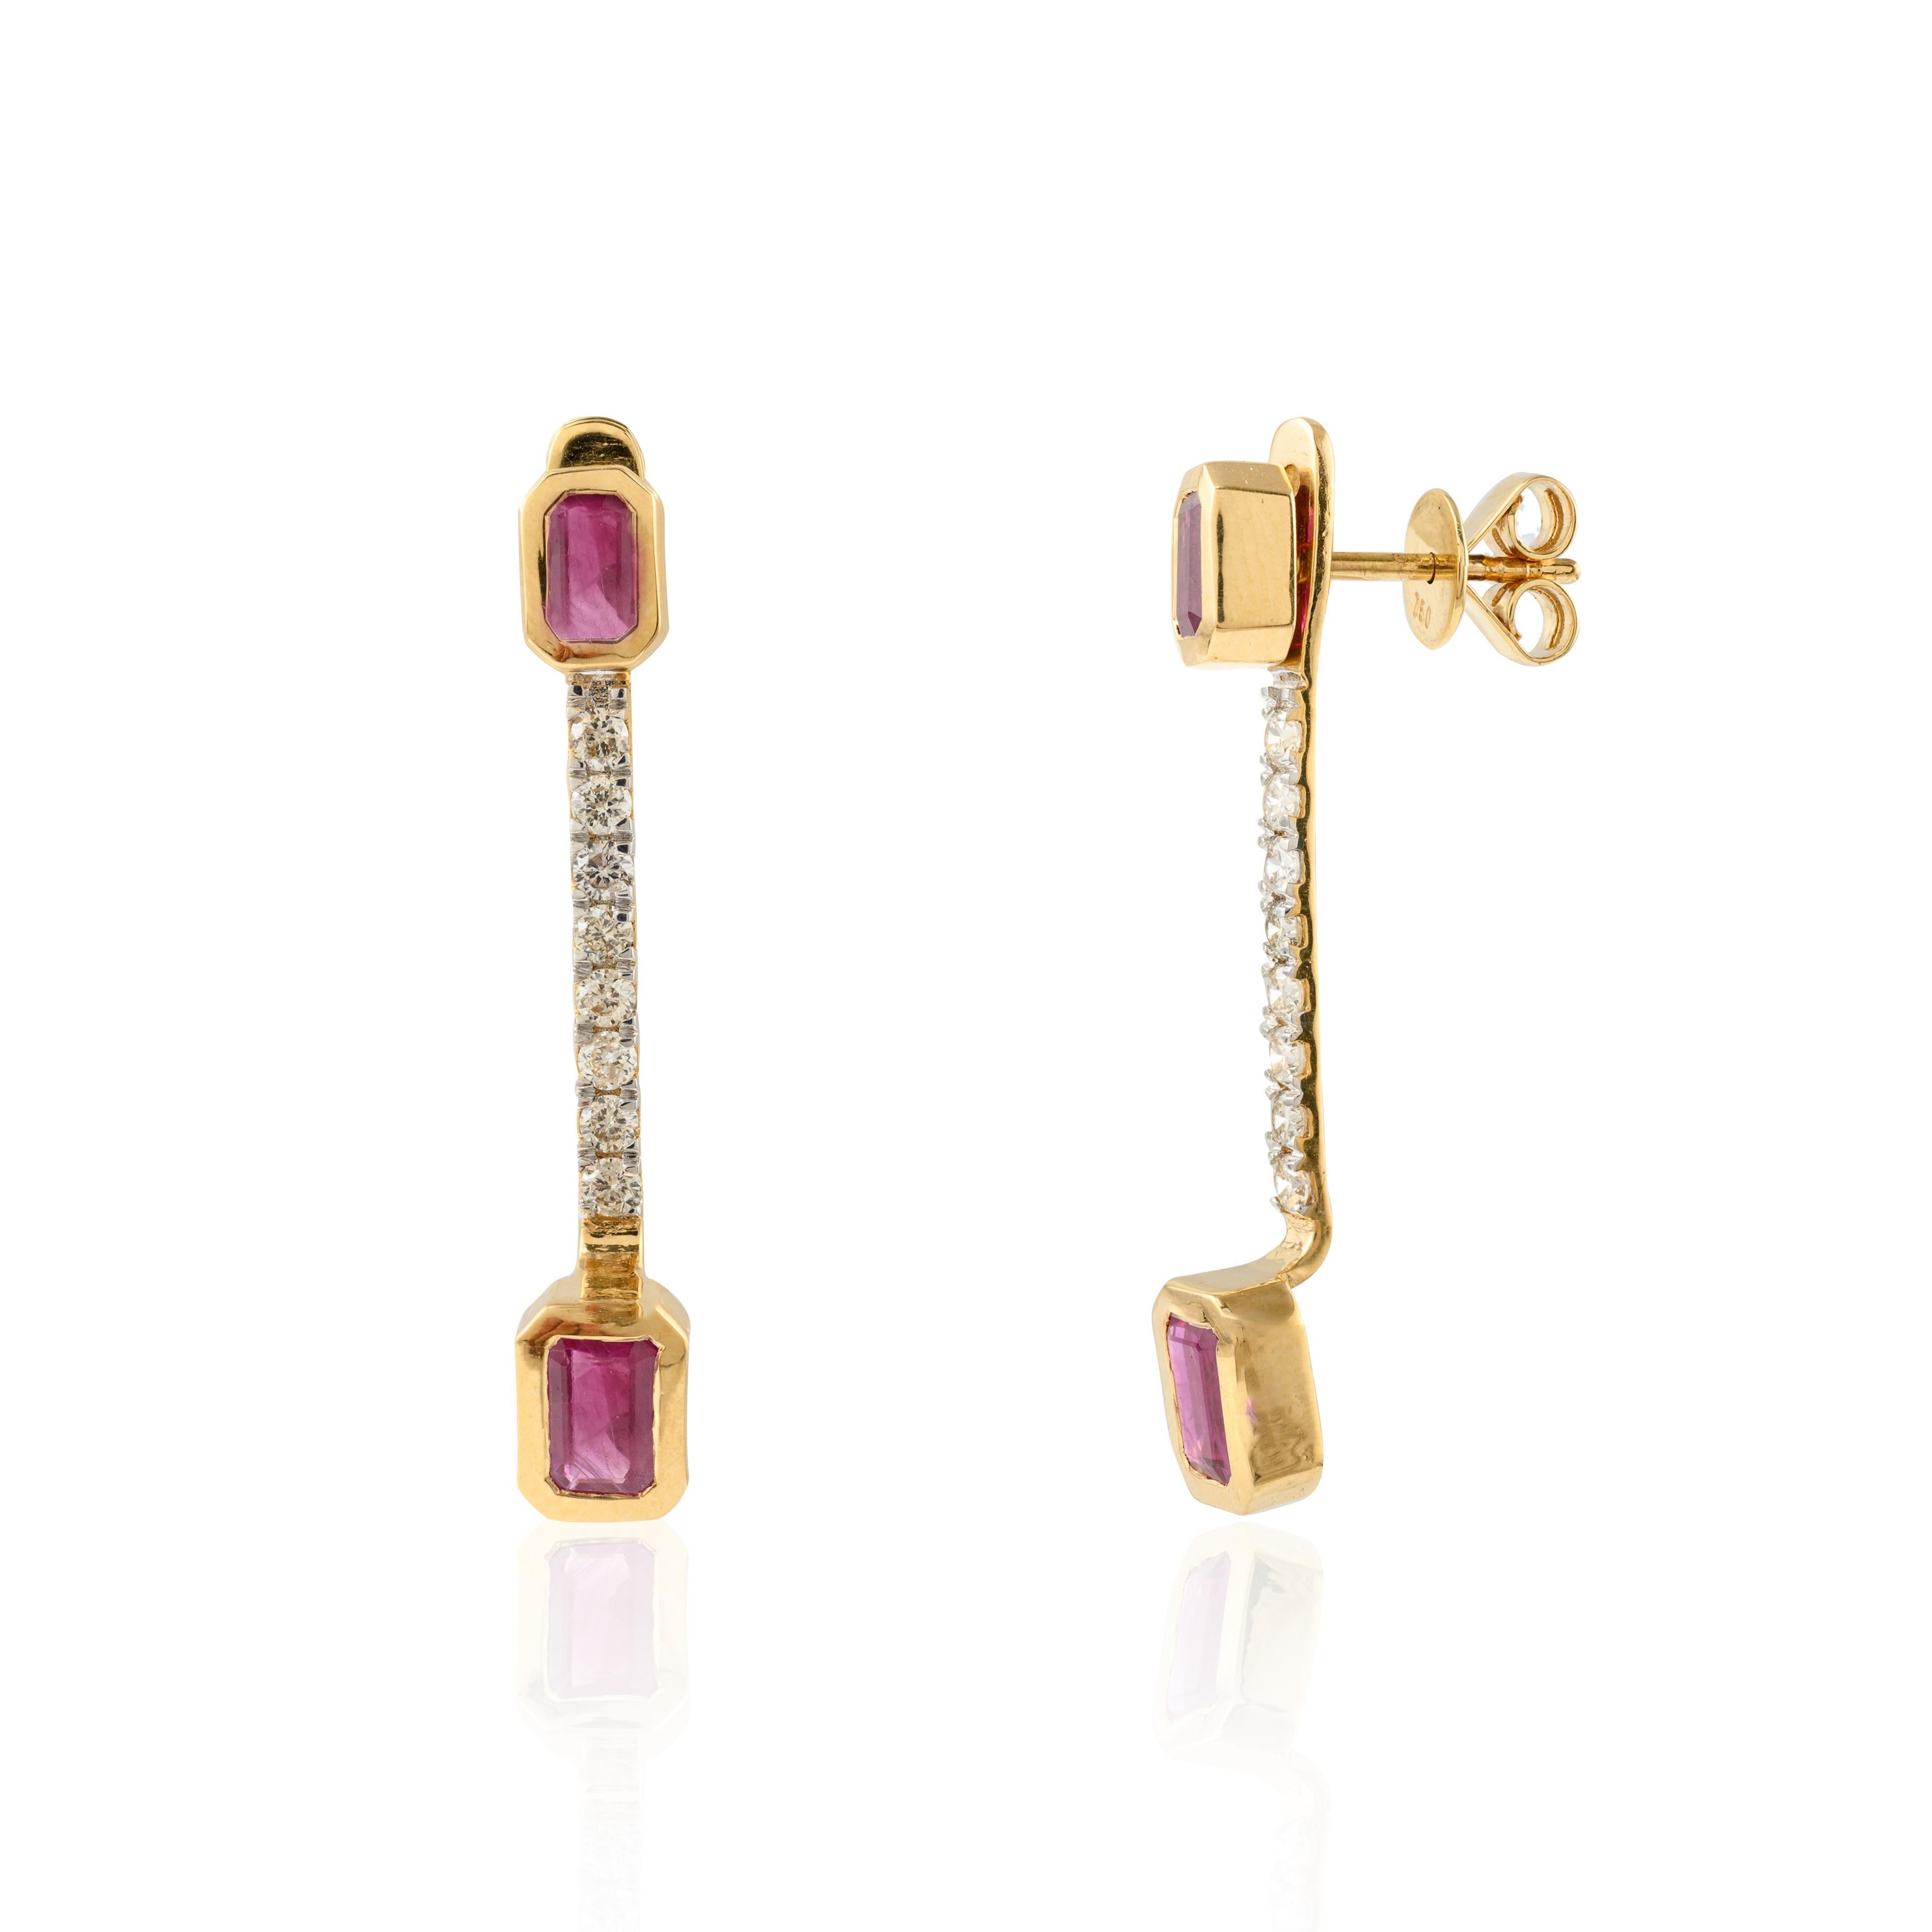 Natürliche Rubin-Diamant-Tropfen-Ohrringe aus 18 Karat Gold, um Ihren Look zu unterstreichen. Diese Ohrringe mit einem Rubin im Achteckschliff sorgen für einen funkelnden, luxuriösen Look.
Rubin verbessert die mentale Stärke. 
Entworfen mit einem